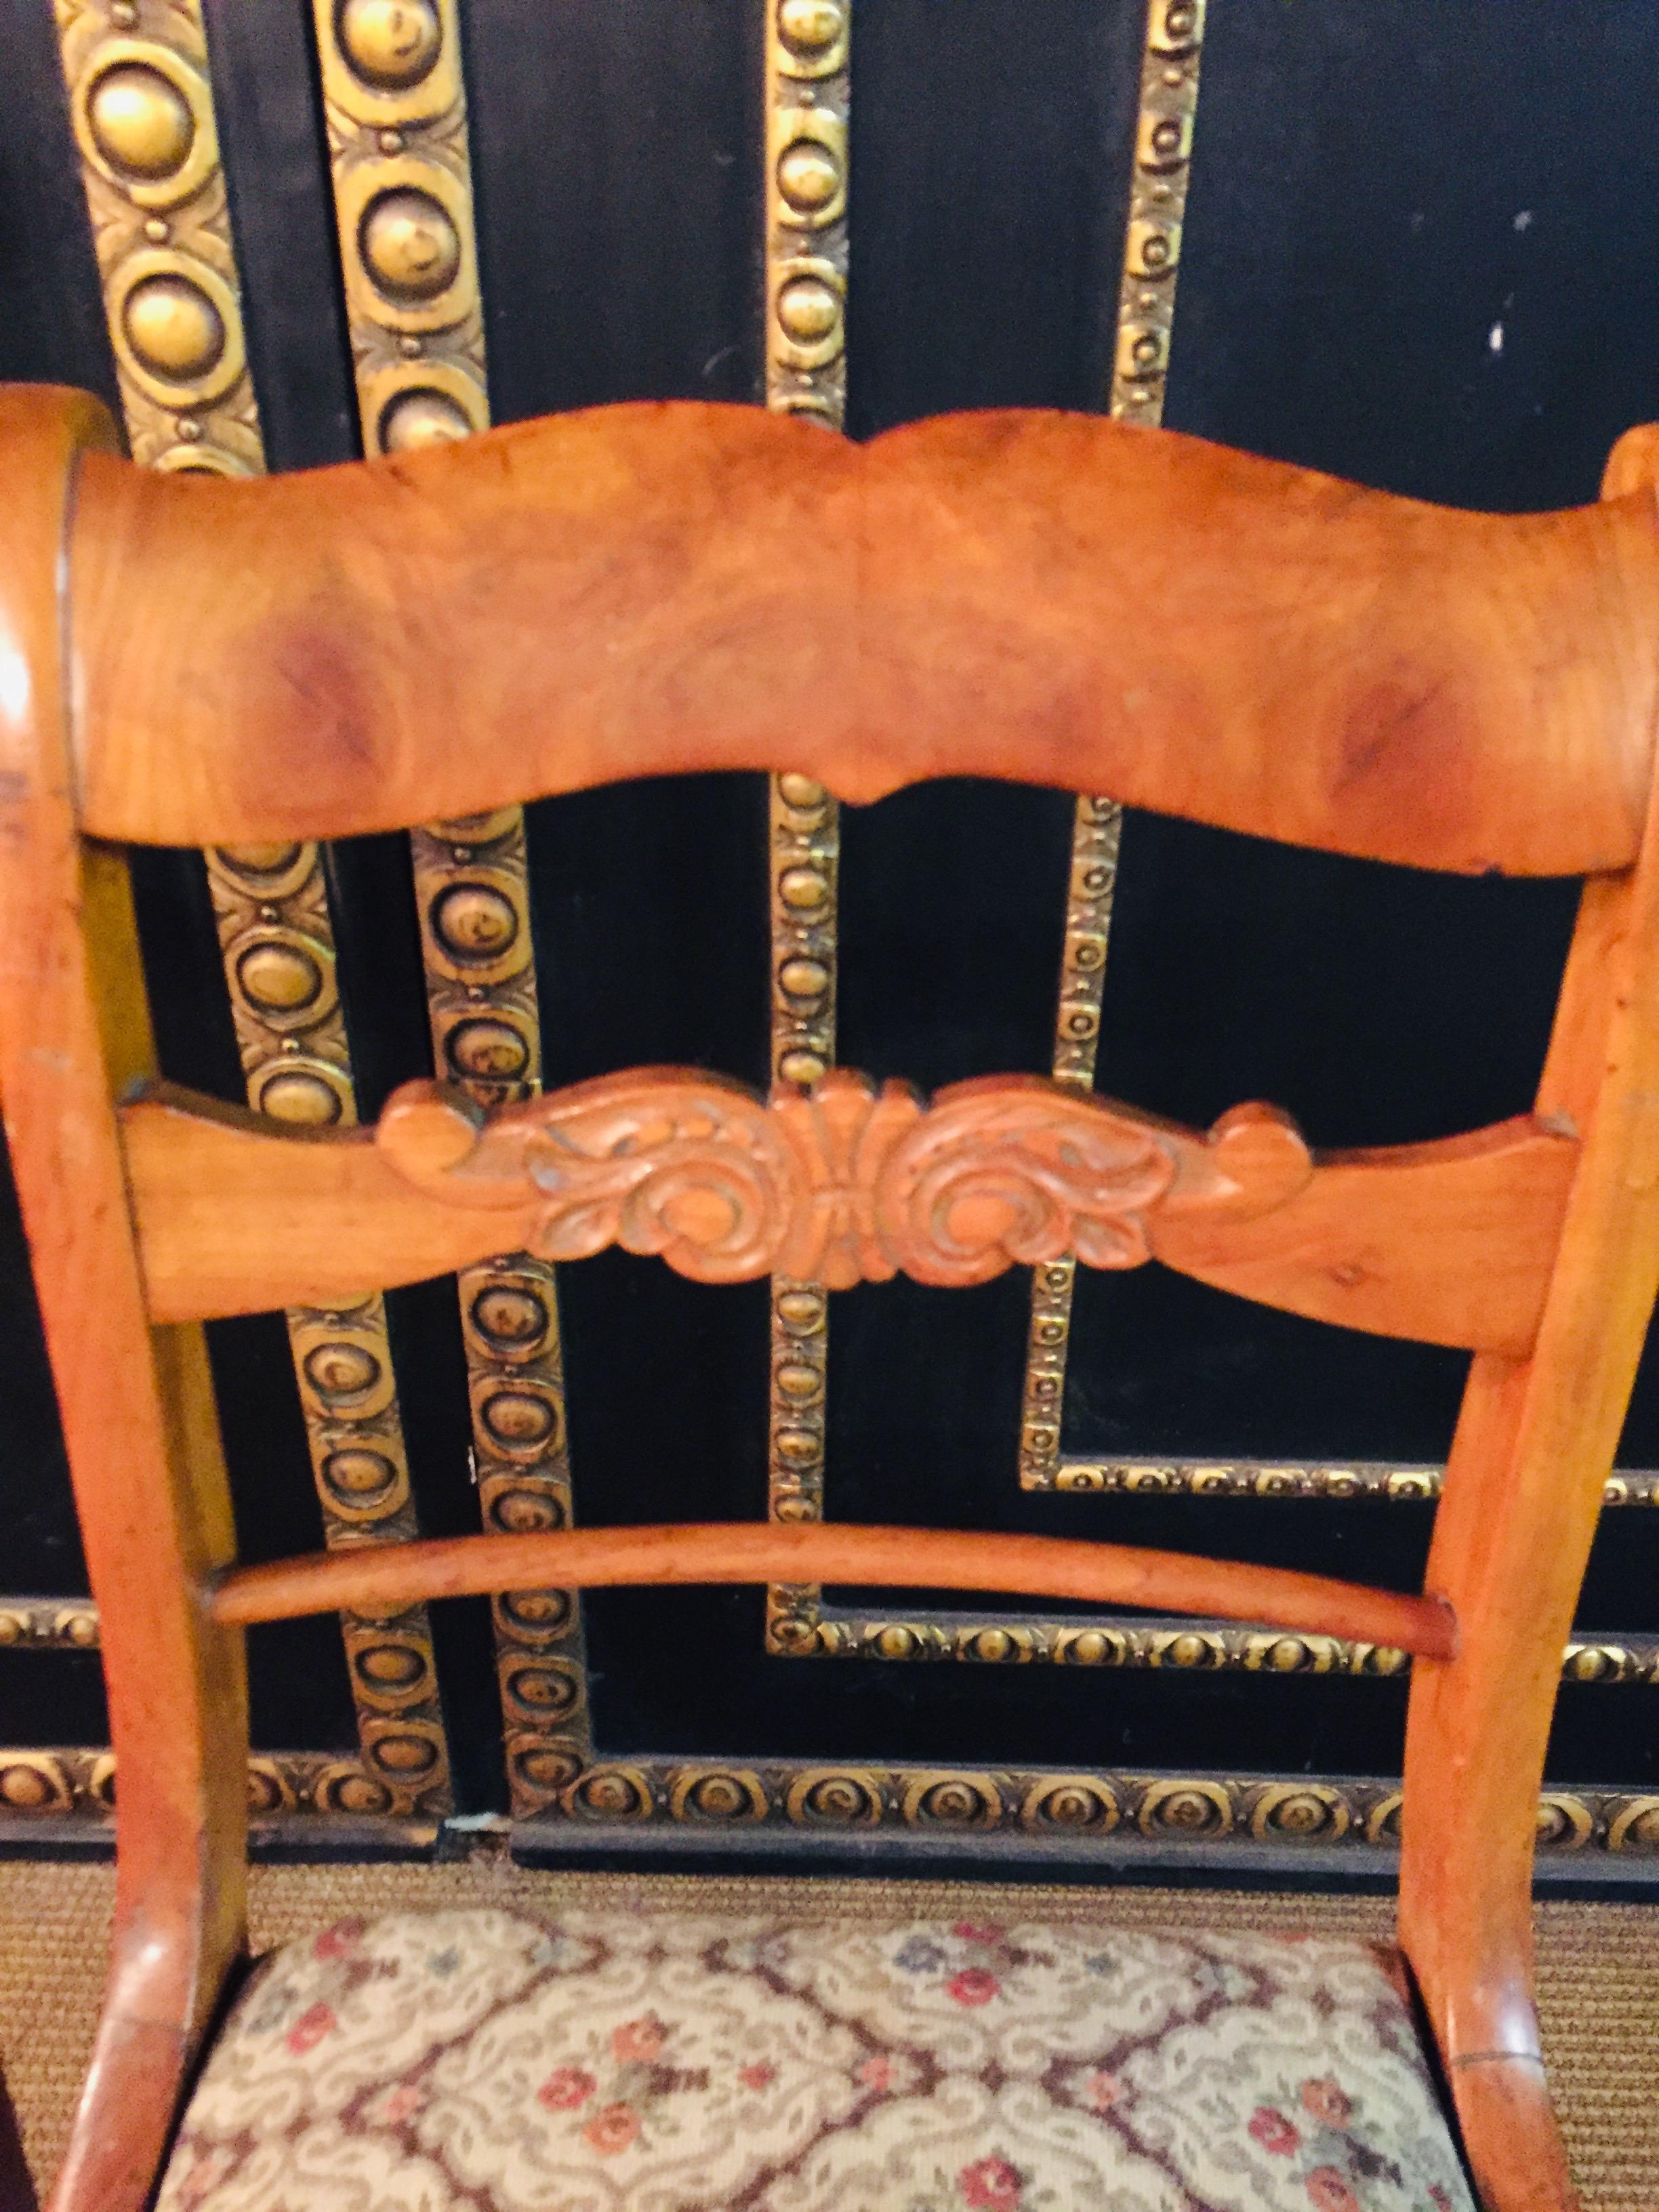 Veneer Pair of Interesting Biedermeier Chairs antique circa 1840 Cherry Wood  veneer For Sale